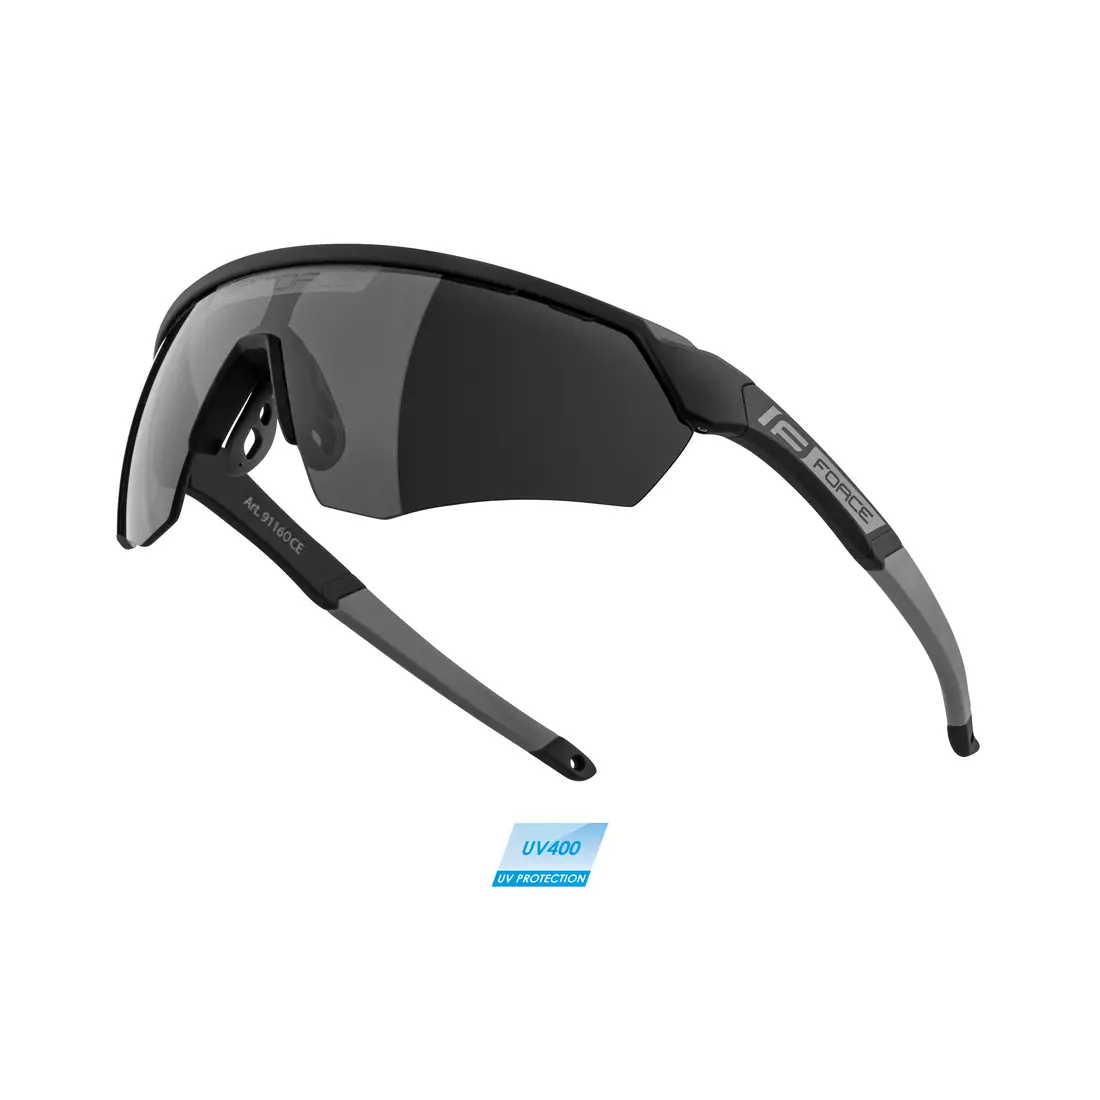 FORCE okulary przeciwsłoneczne ENIGMA black/grey 91160